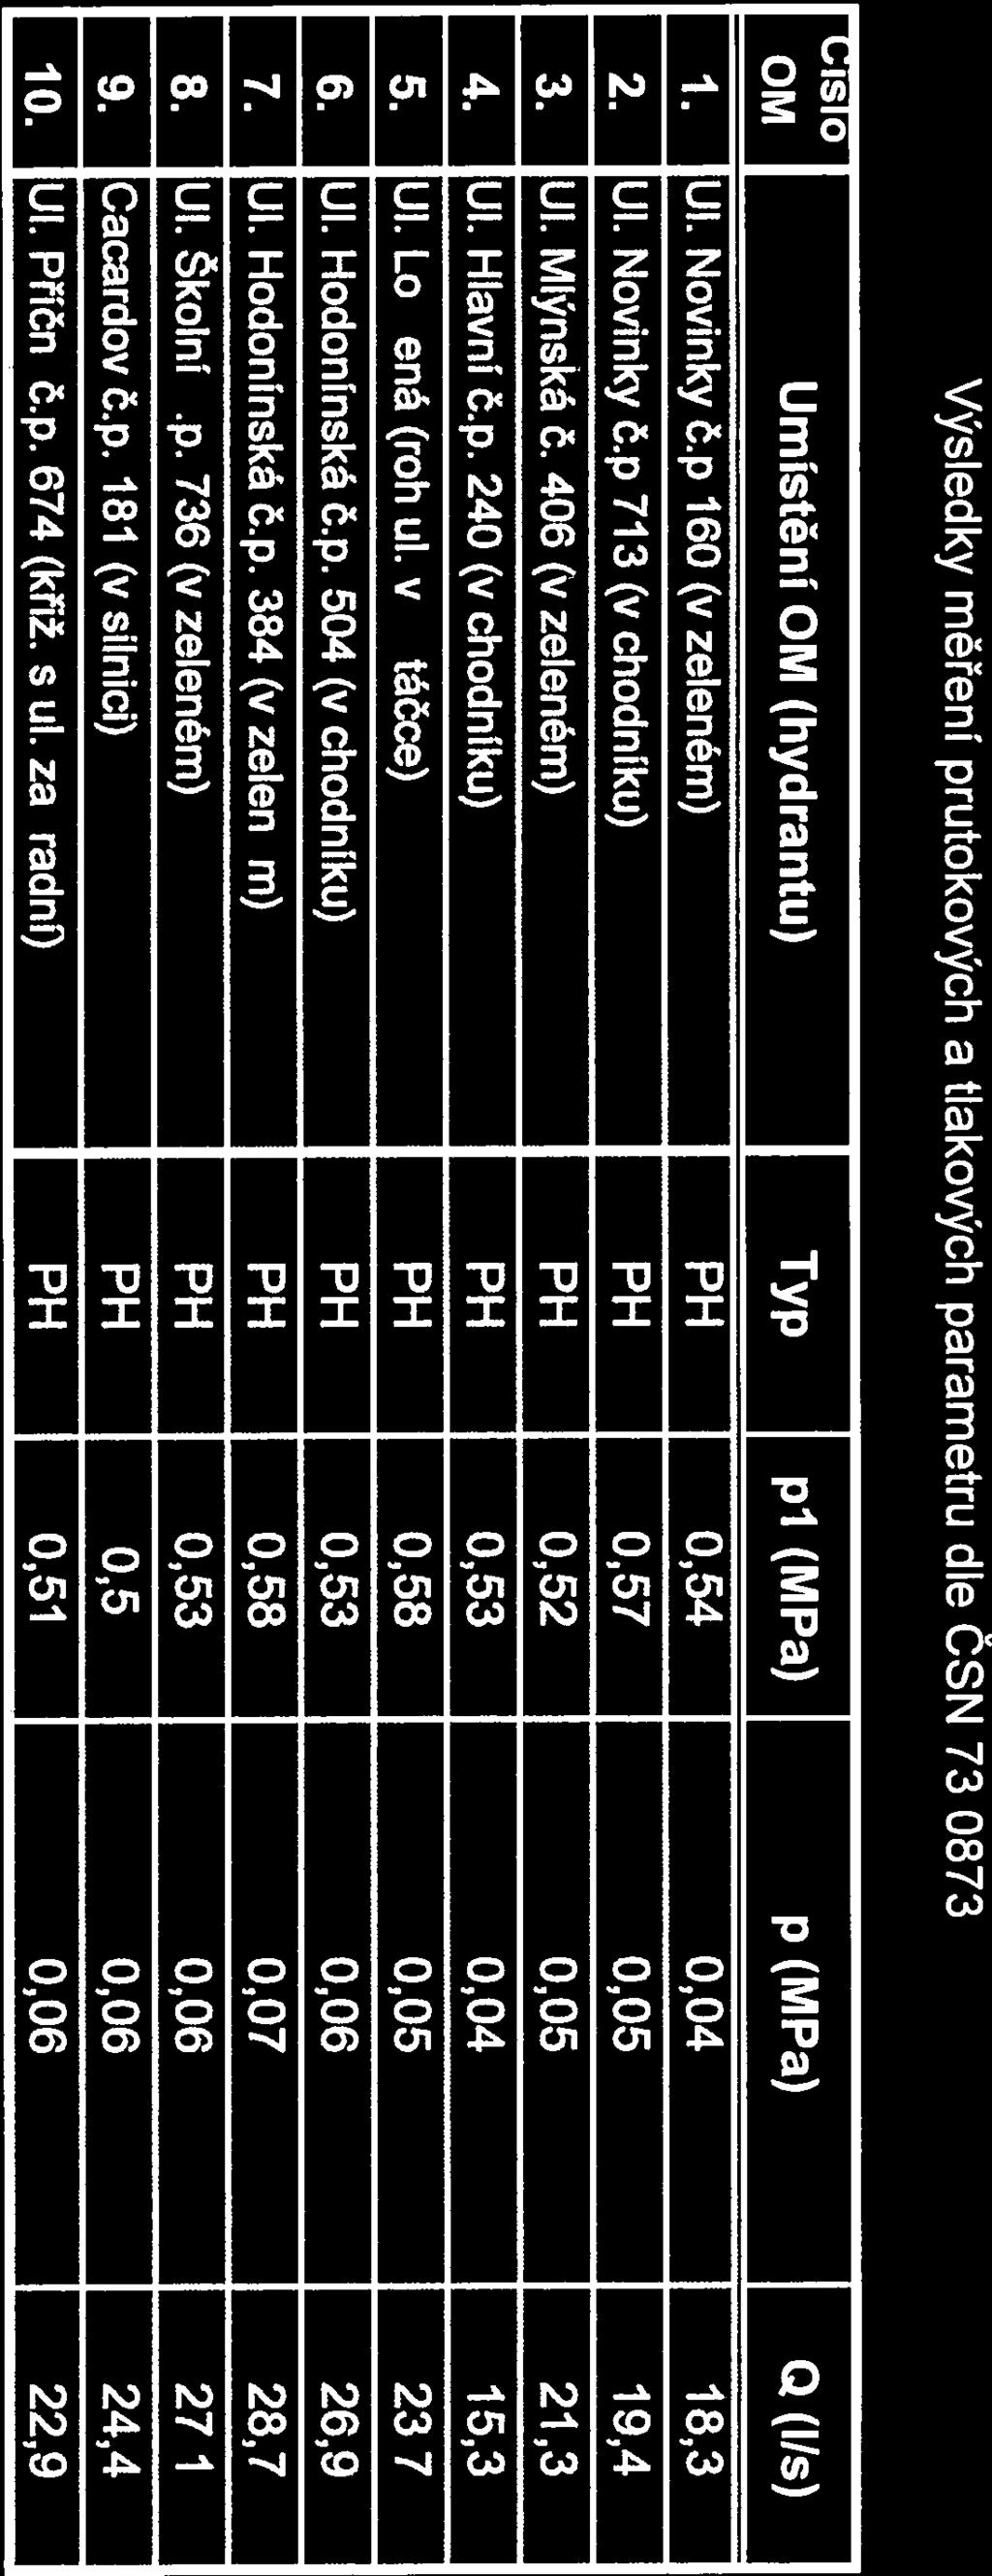 X-iQ-VaK Výsledky měření průtokových a tlakových parametrů dle ČSN 73 0873 isio OM UmĺstenÍ OM (hydrantu) Typ p1 (M Pa) p (MPa) Q (Ils) 1. Ul. Novinkyč.p 160(v zeleném) PH 0,54 0,04 78,3 2. Ul. Novinky č.